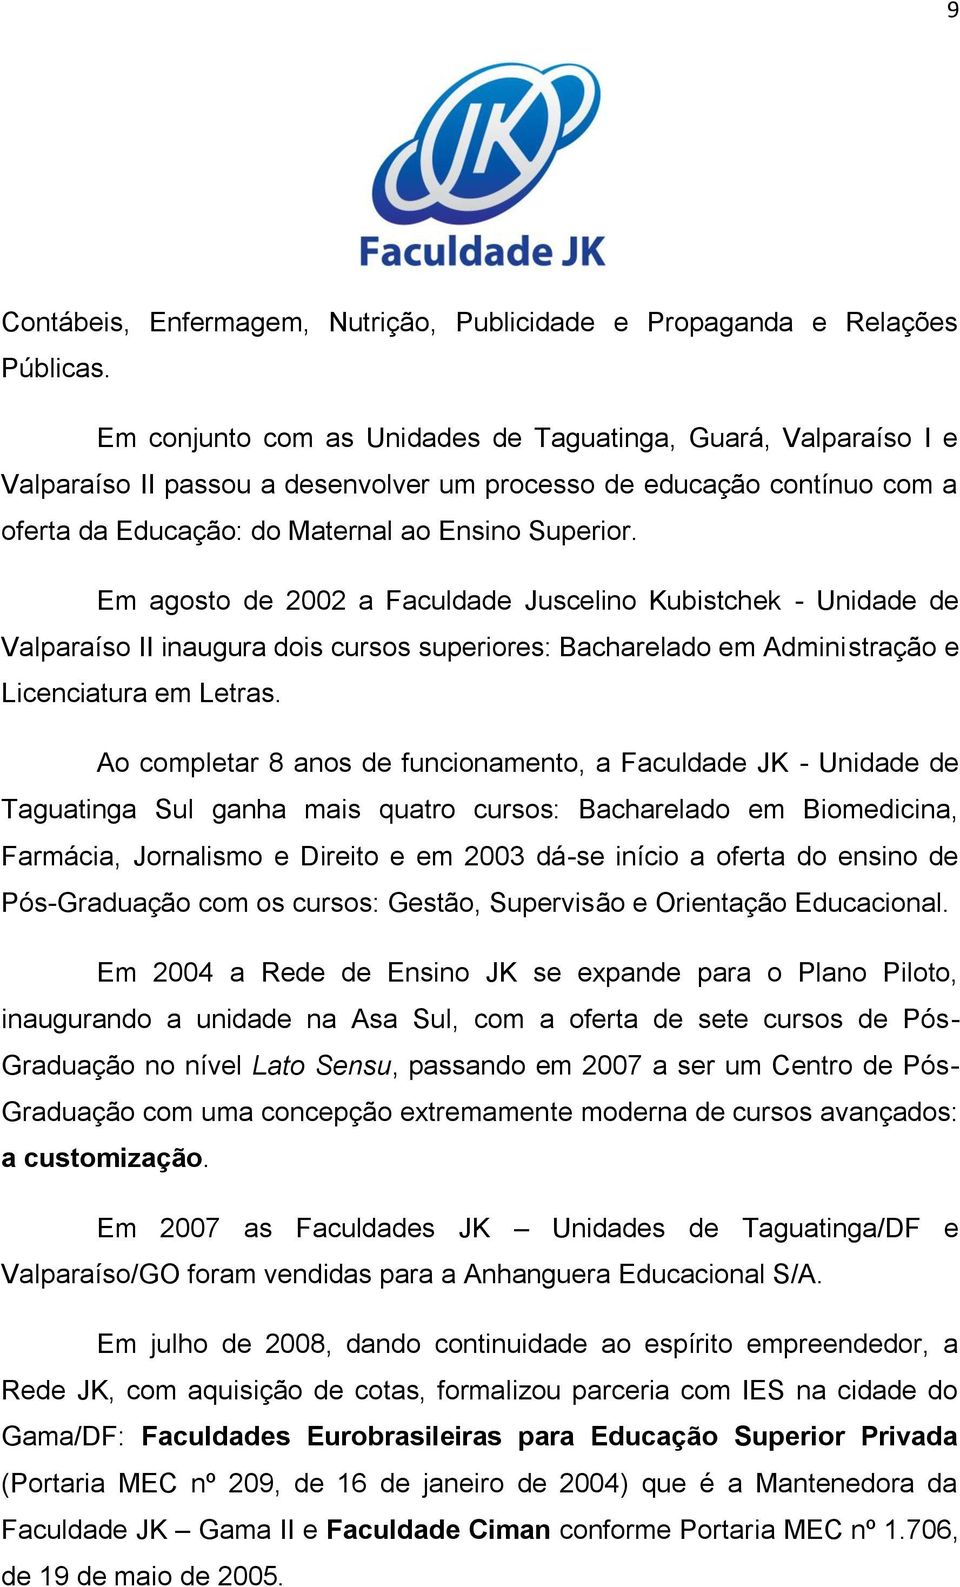 Em agosto de 2002 a Faculdade Juscelino Kubistchek - Unidade de Valparaíso II inaugura dois cursos superiores: Bacharelado em Administração e Licenciatura em Letras.